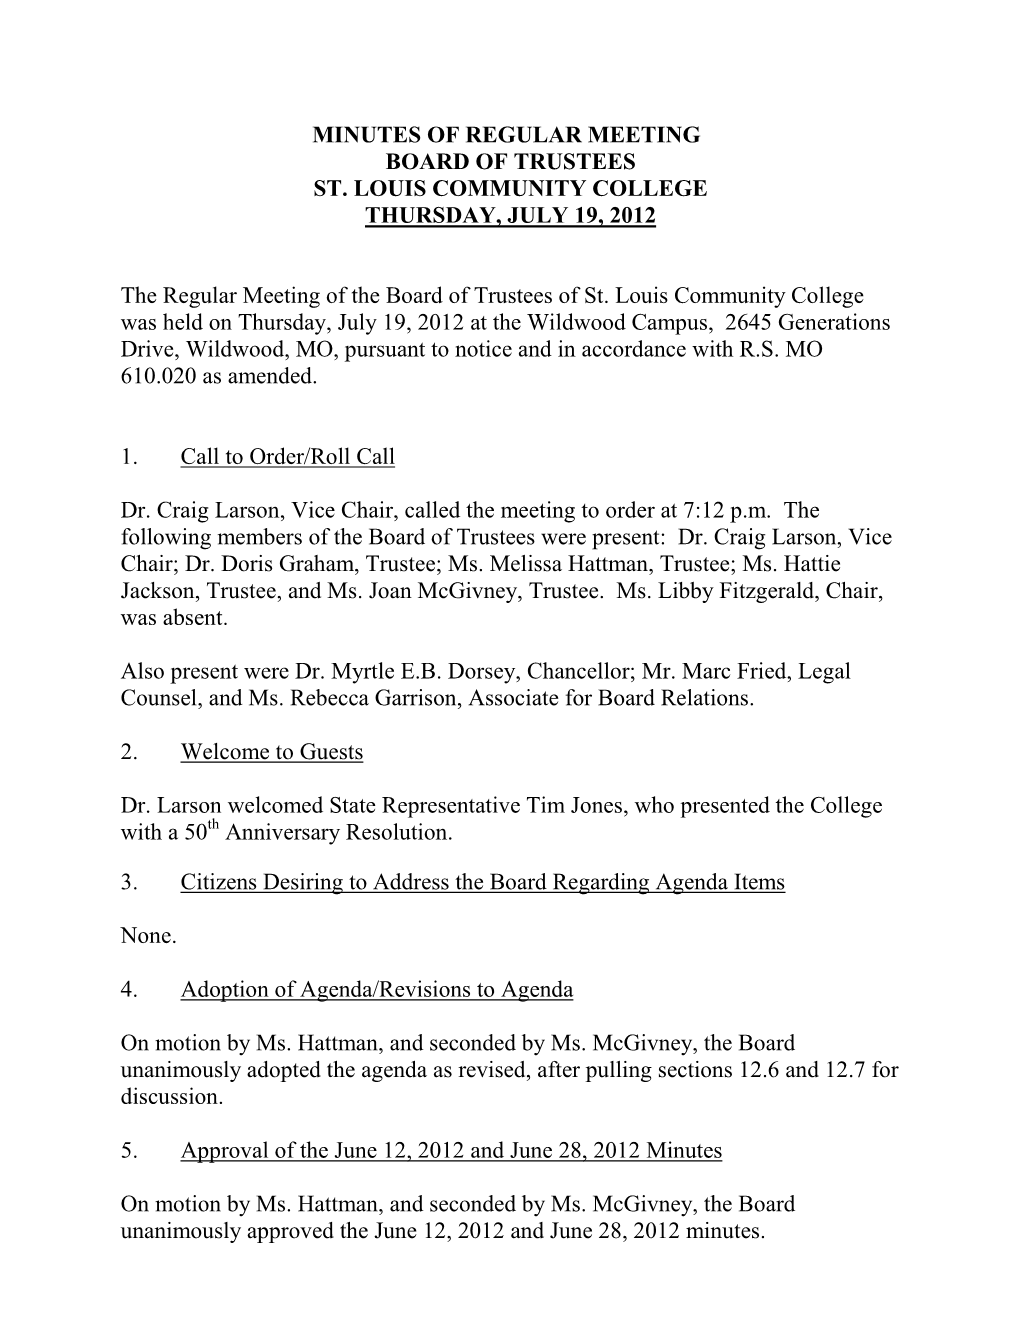 STLCC Board of Trustees Meeting Minutes, July 19, 2012